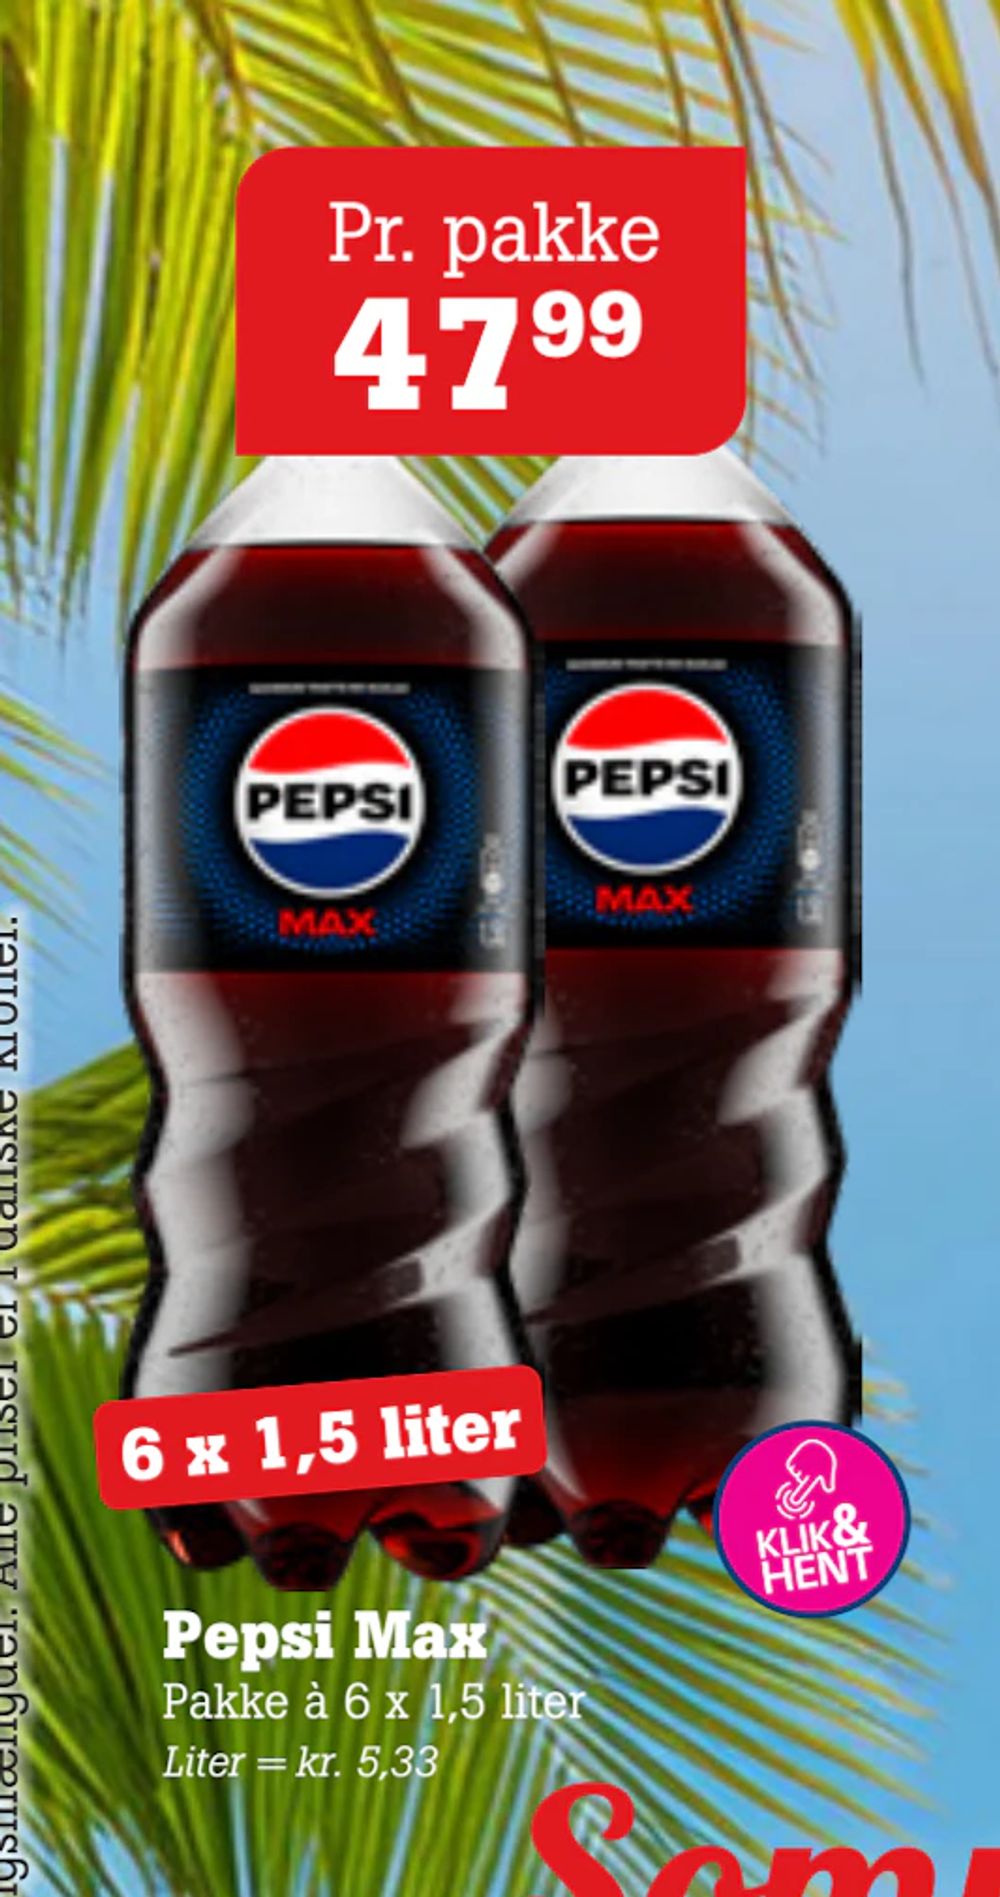 Tilbud på Pepsi Max fra Poetzsch Padborg til 47,99 kr.